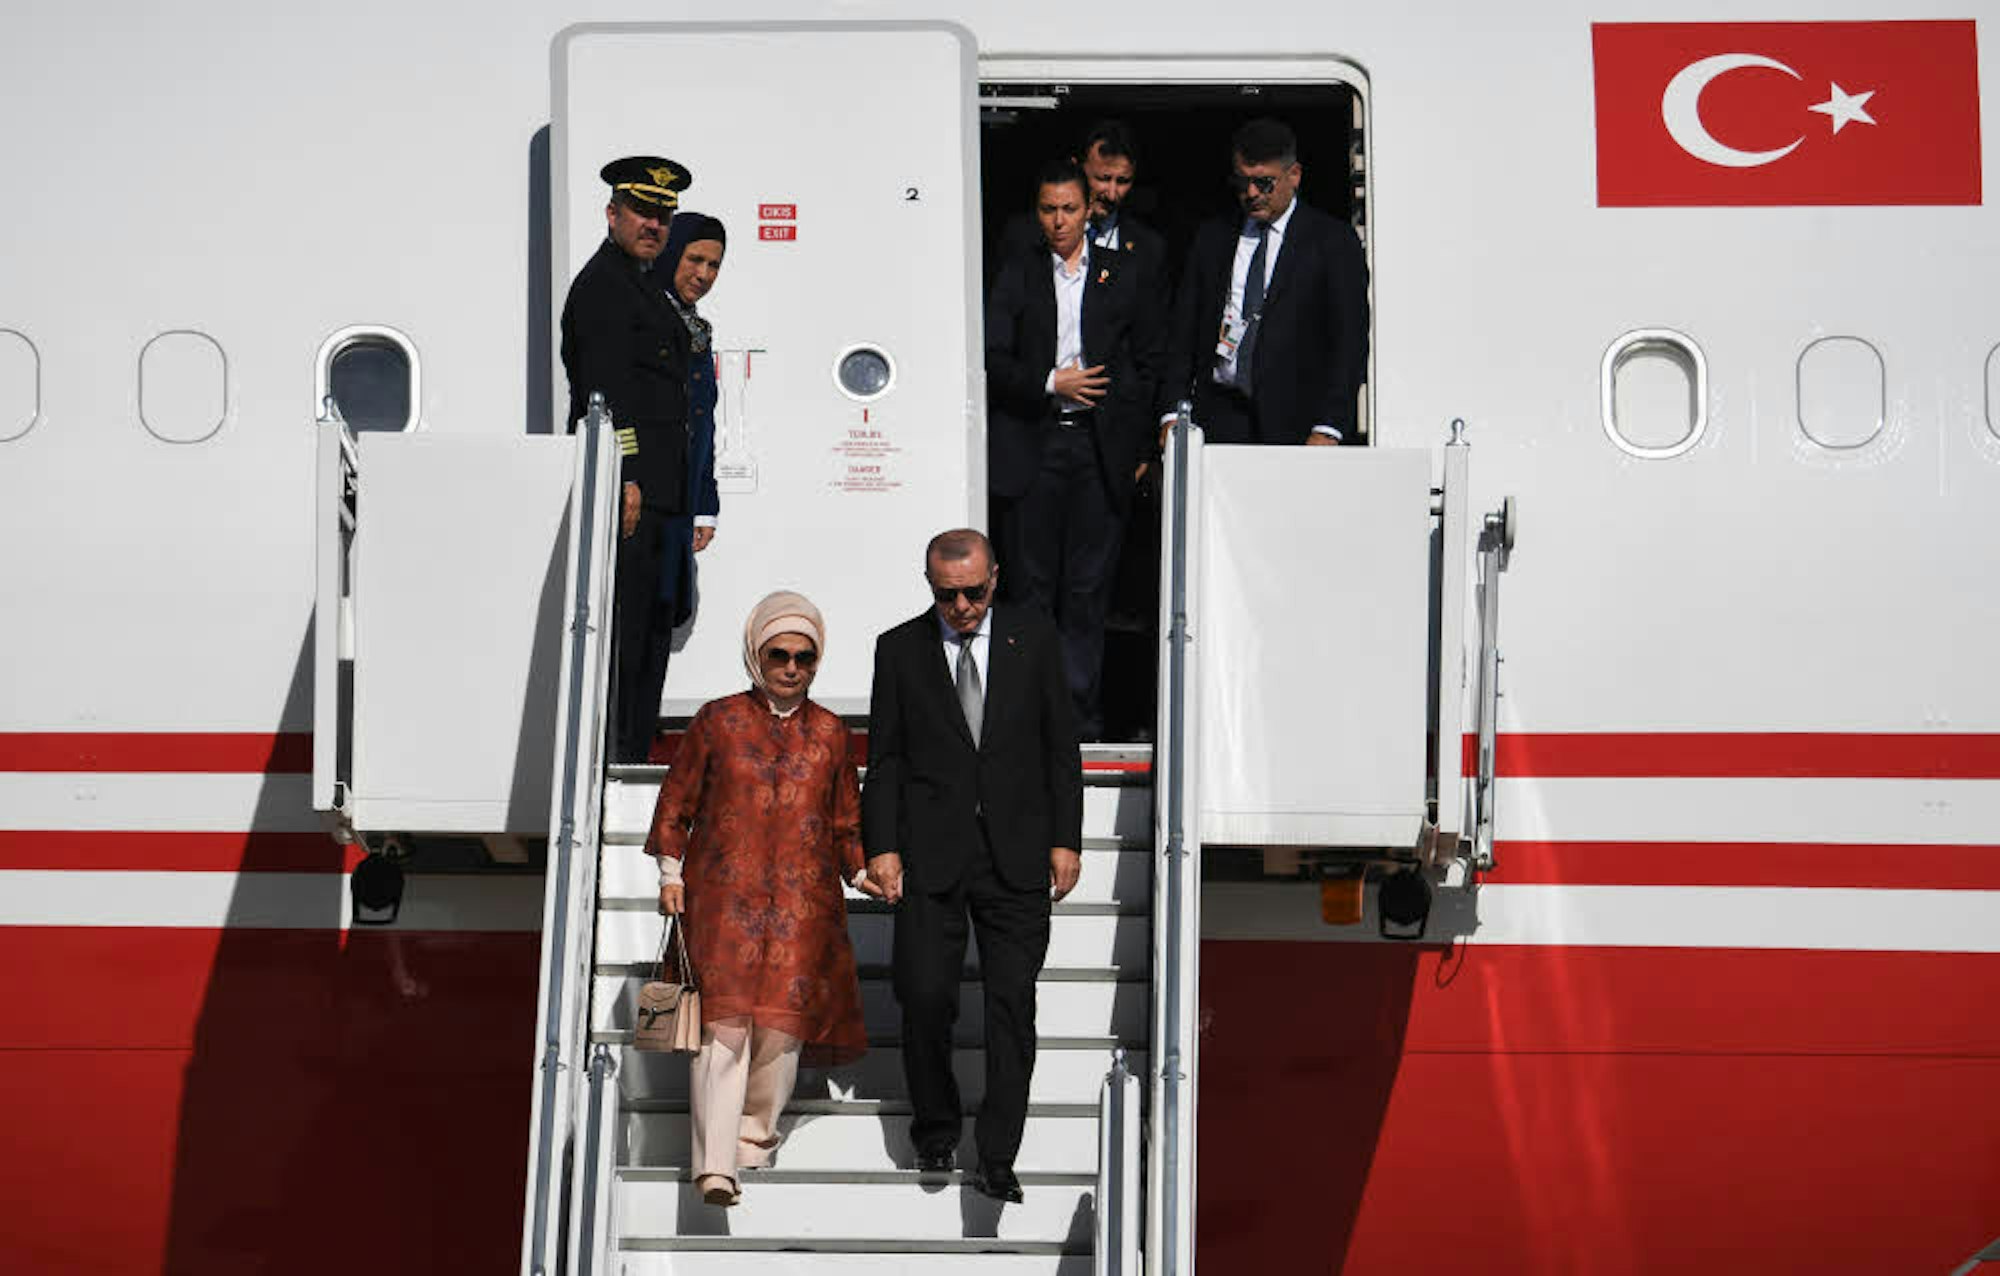 Der türkische Präsident und seine Frau Emine bei der Ankunft auf dem Flughafen Köln/Bonn